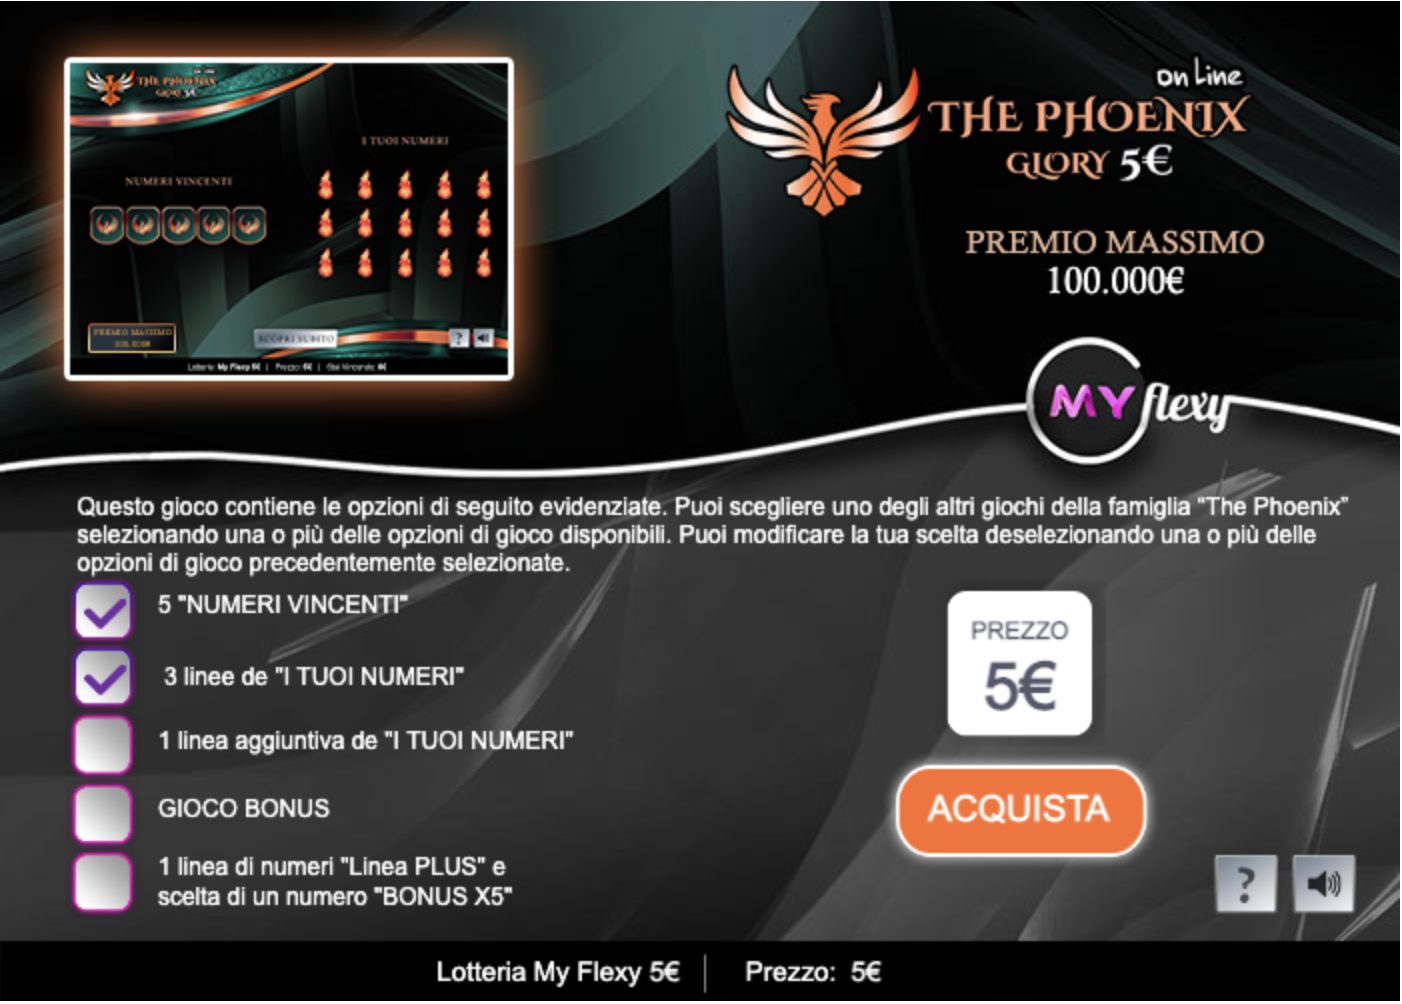 The Phoenix Glory 5€ - online